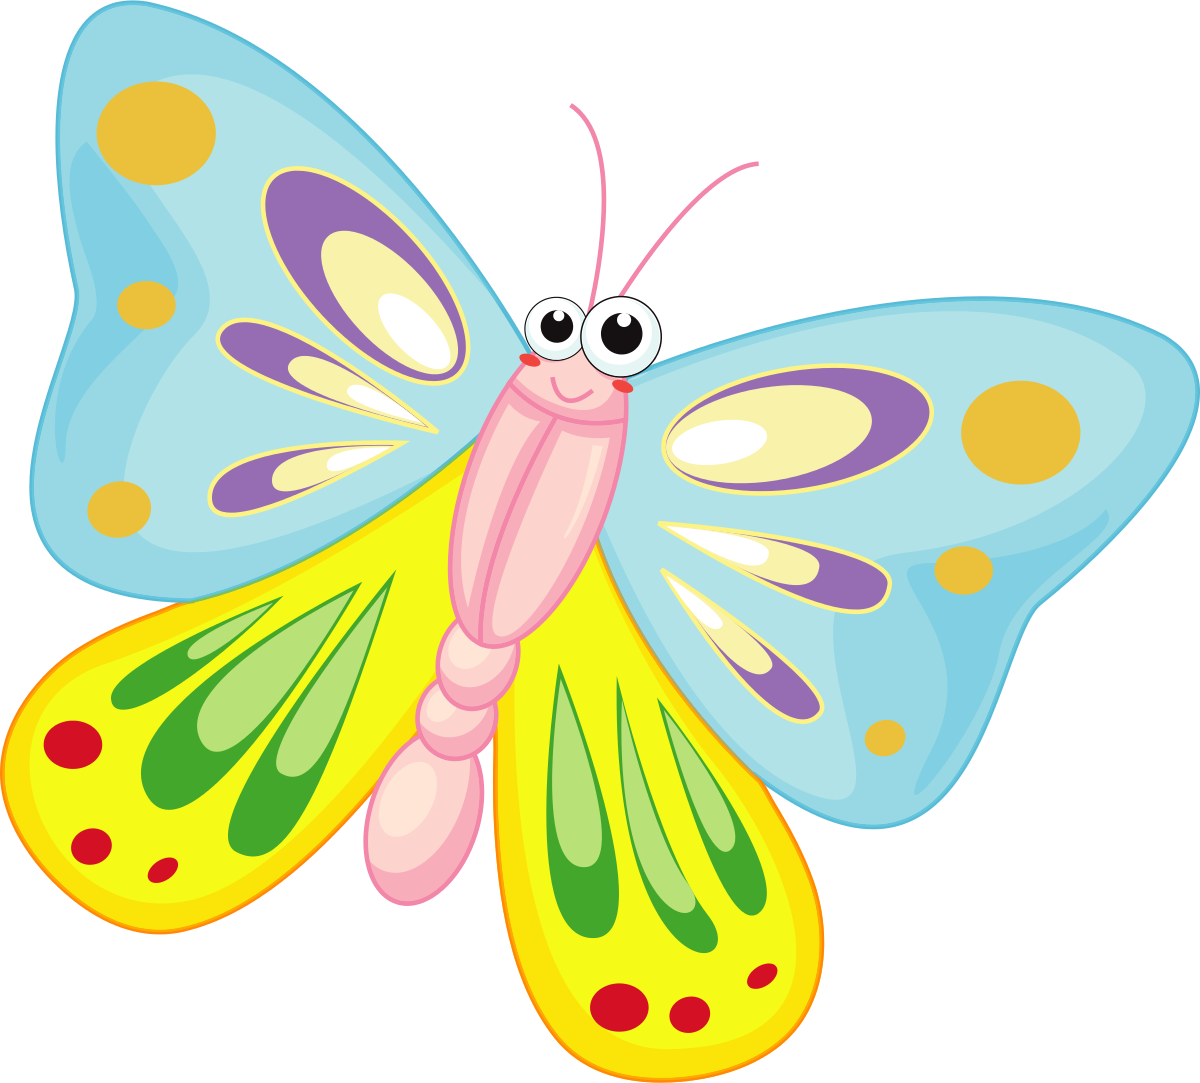 Butterflies clip art cliparta - Butterfly Clipart Images